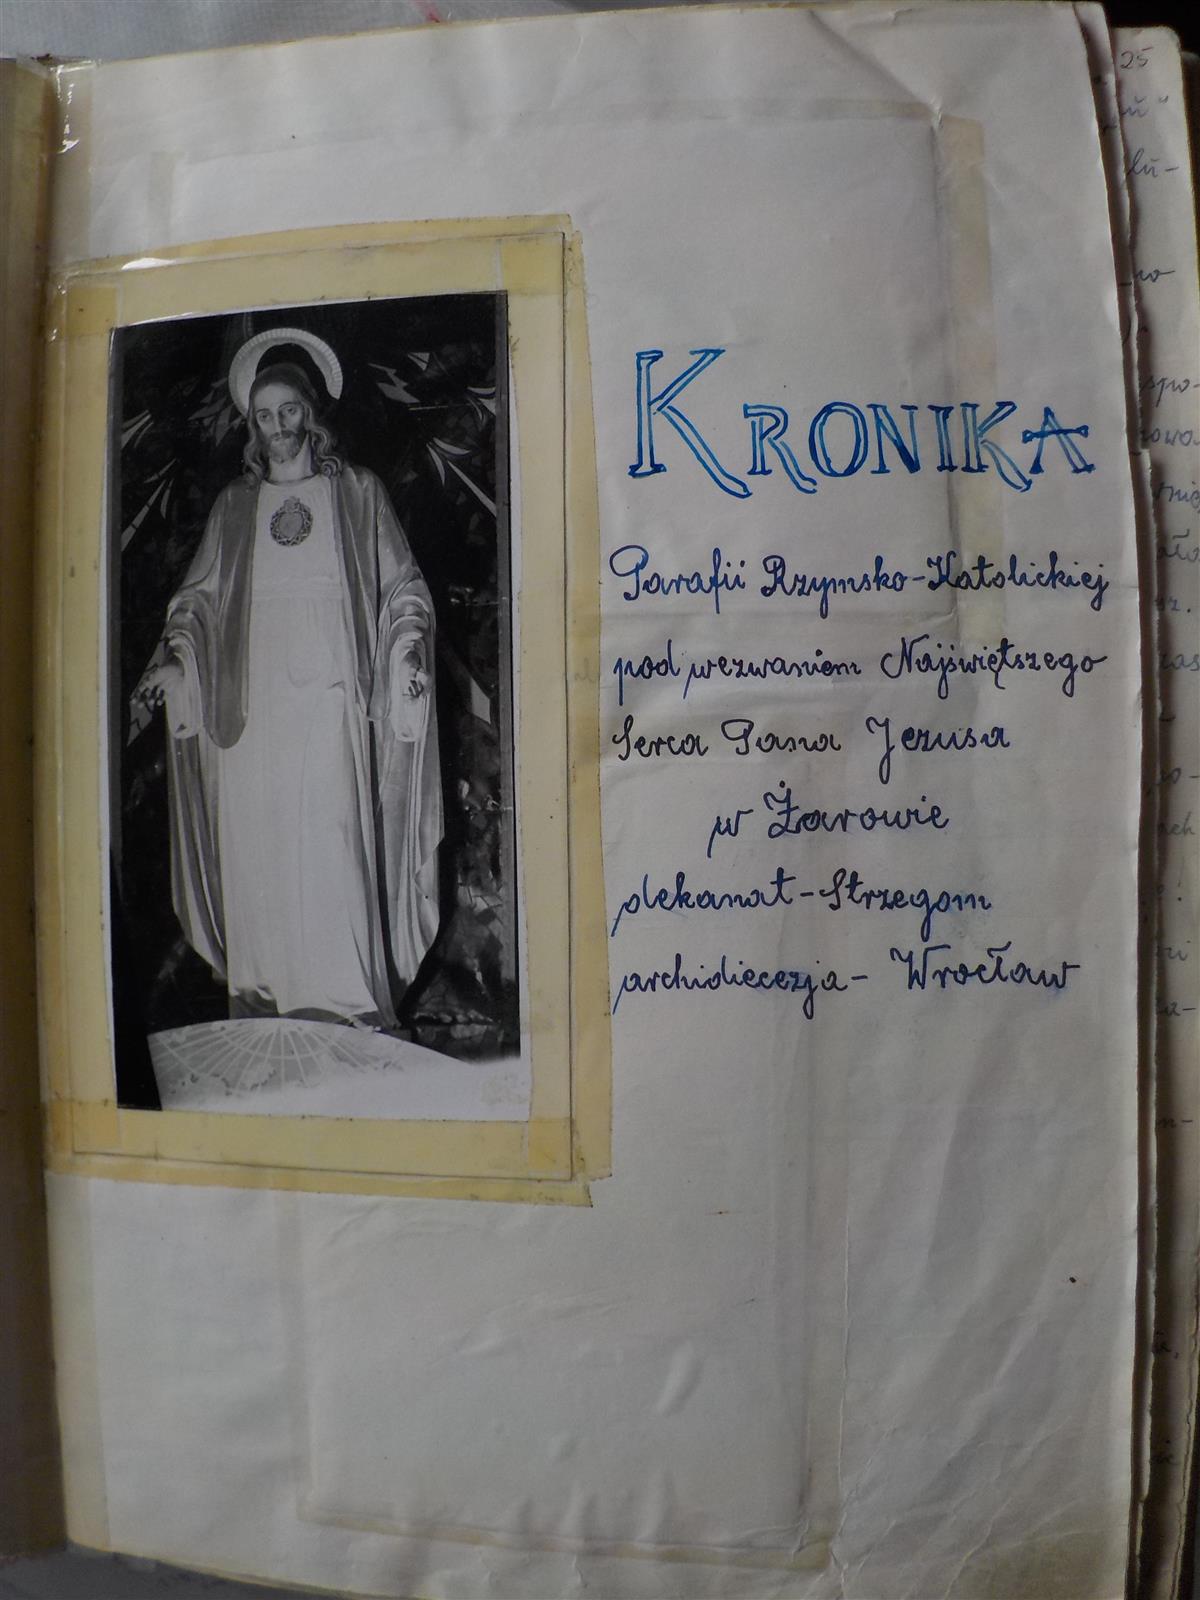 kronika parafii zarow (1)